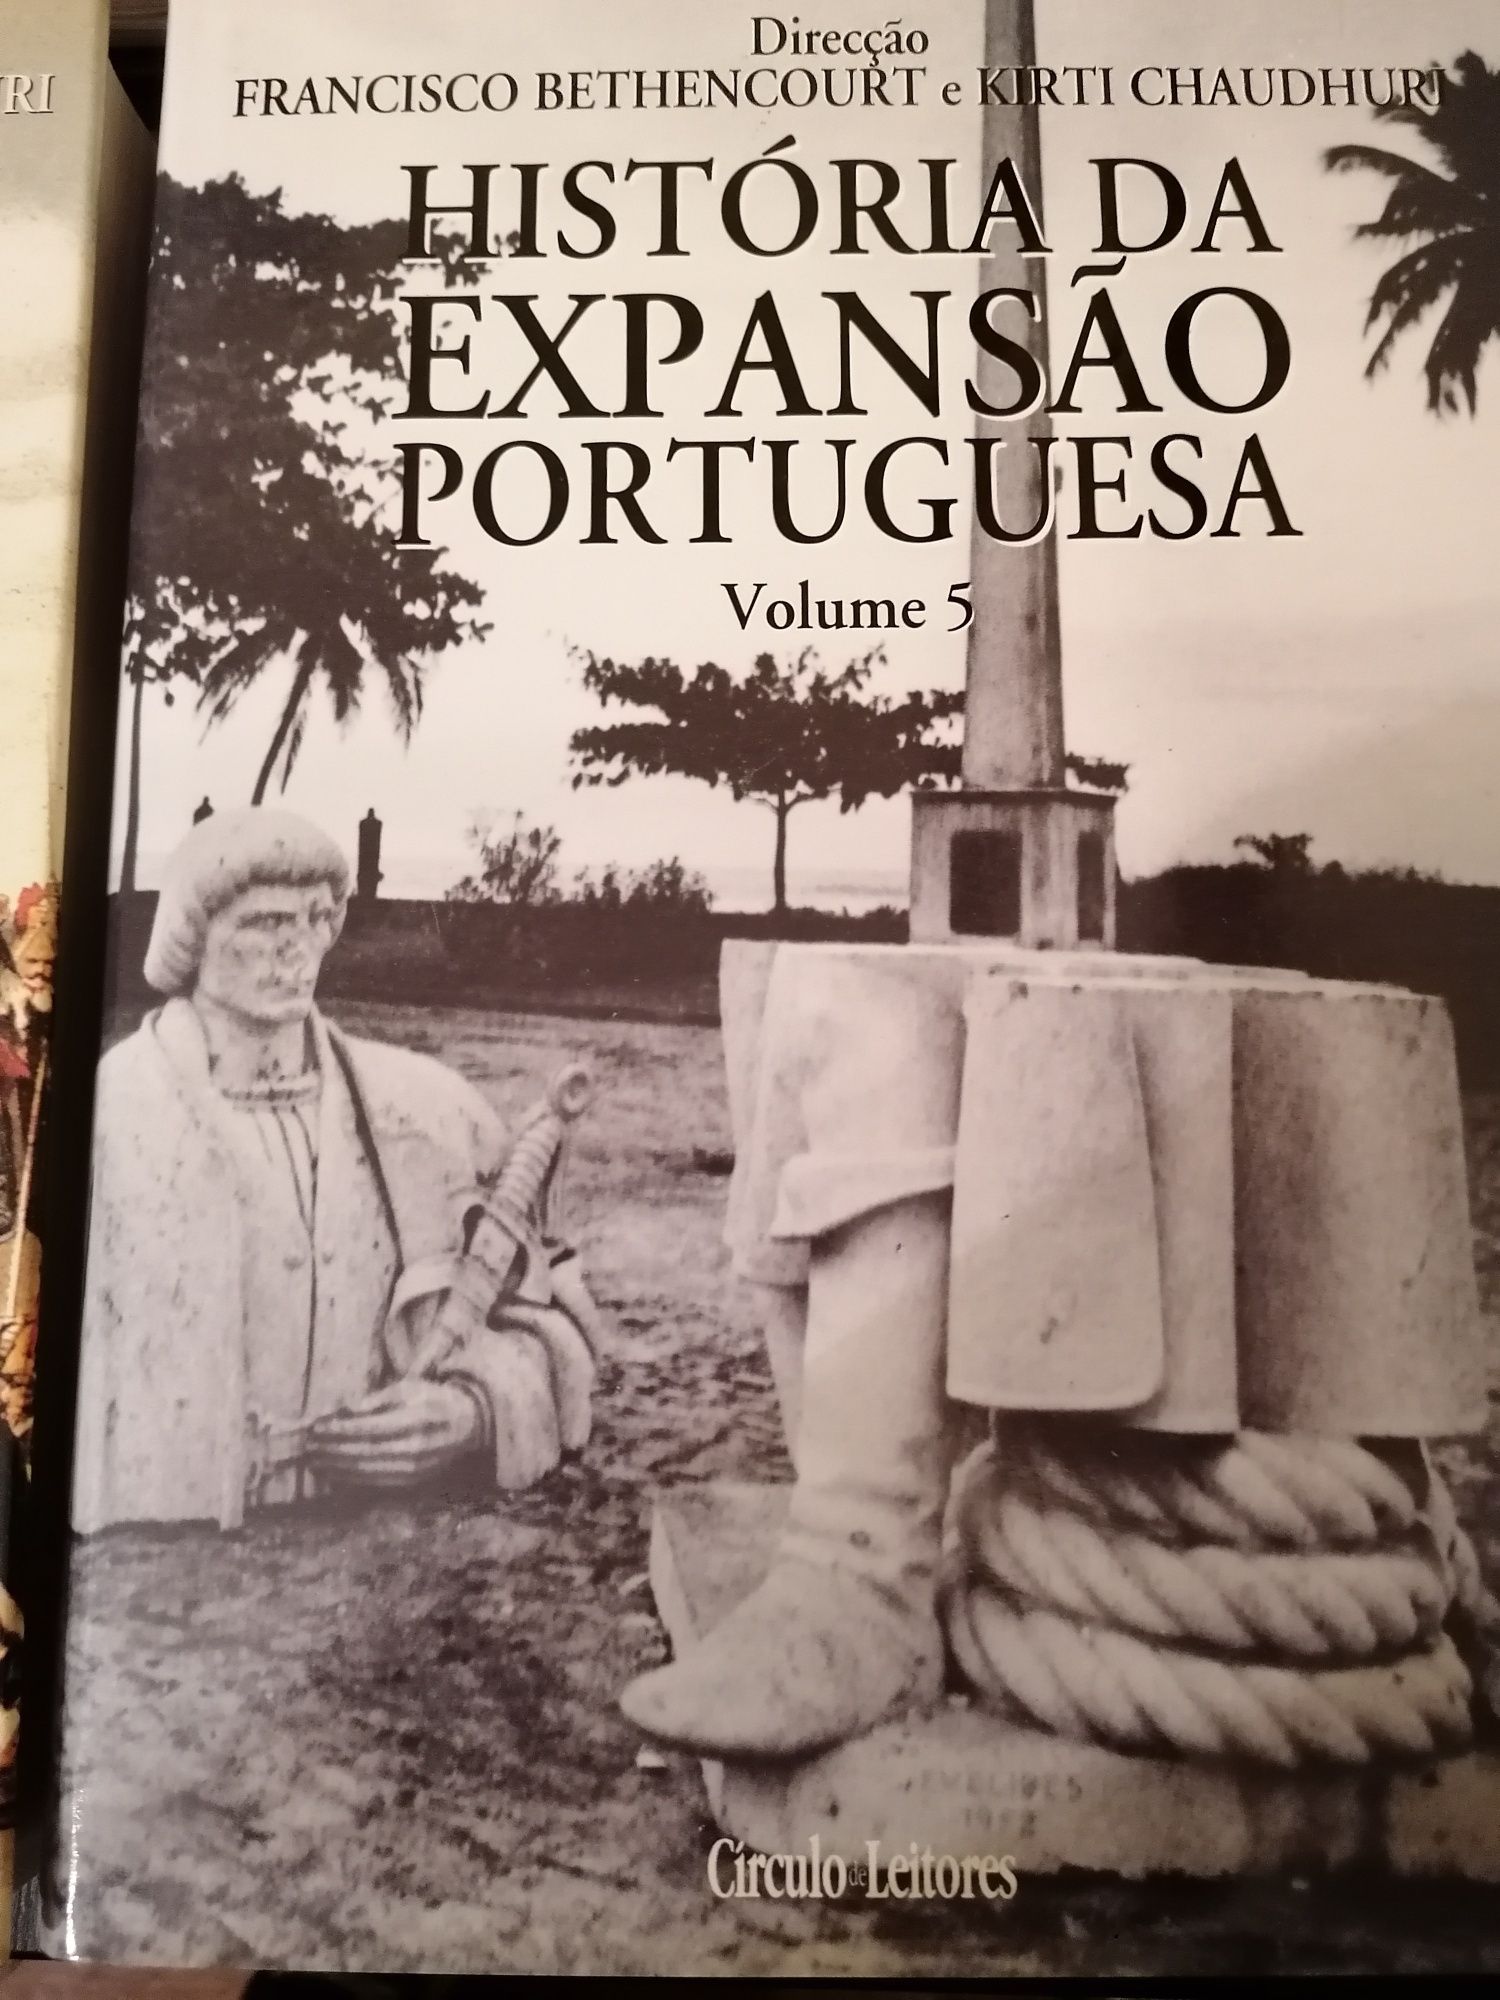 Coleção de enciclopédia História da expansão portuguesa, 5 volumes